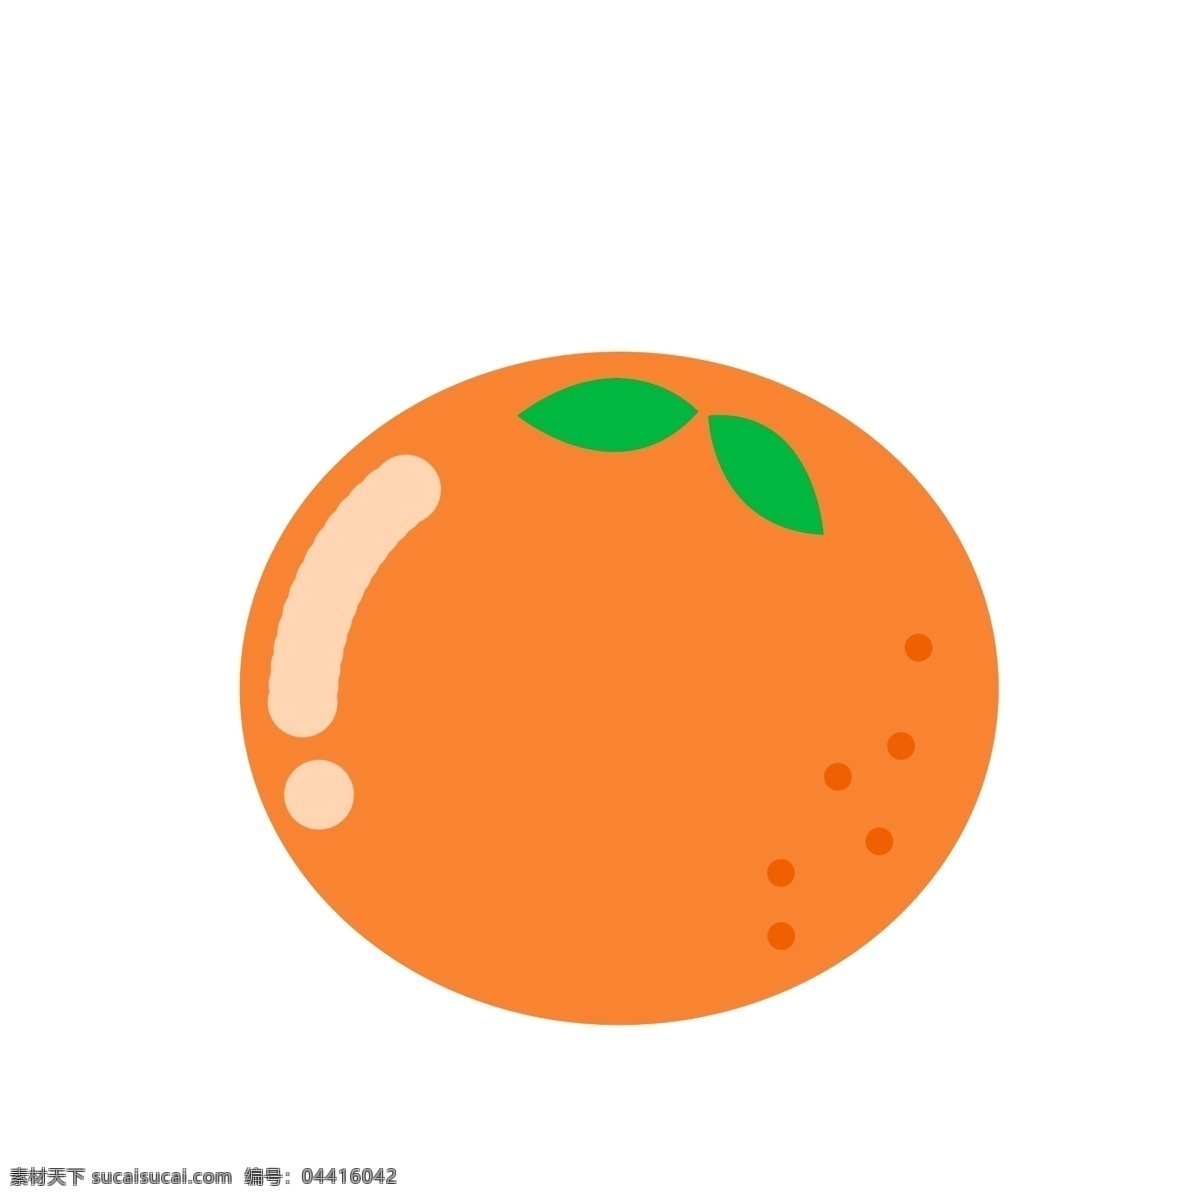 水果 图标 元素 橘子 水果图标 简约风格 ppt图标 橘子水果 png免扣 免扣 海报图标